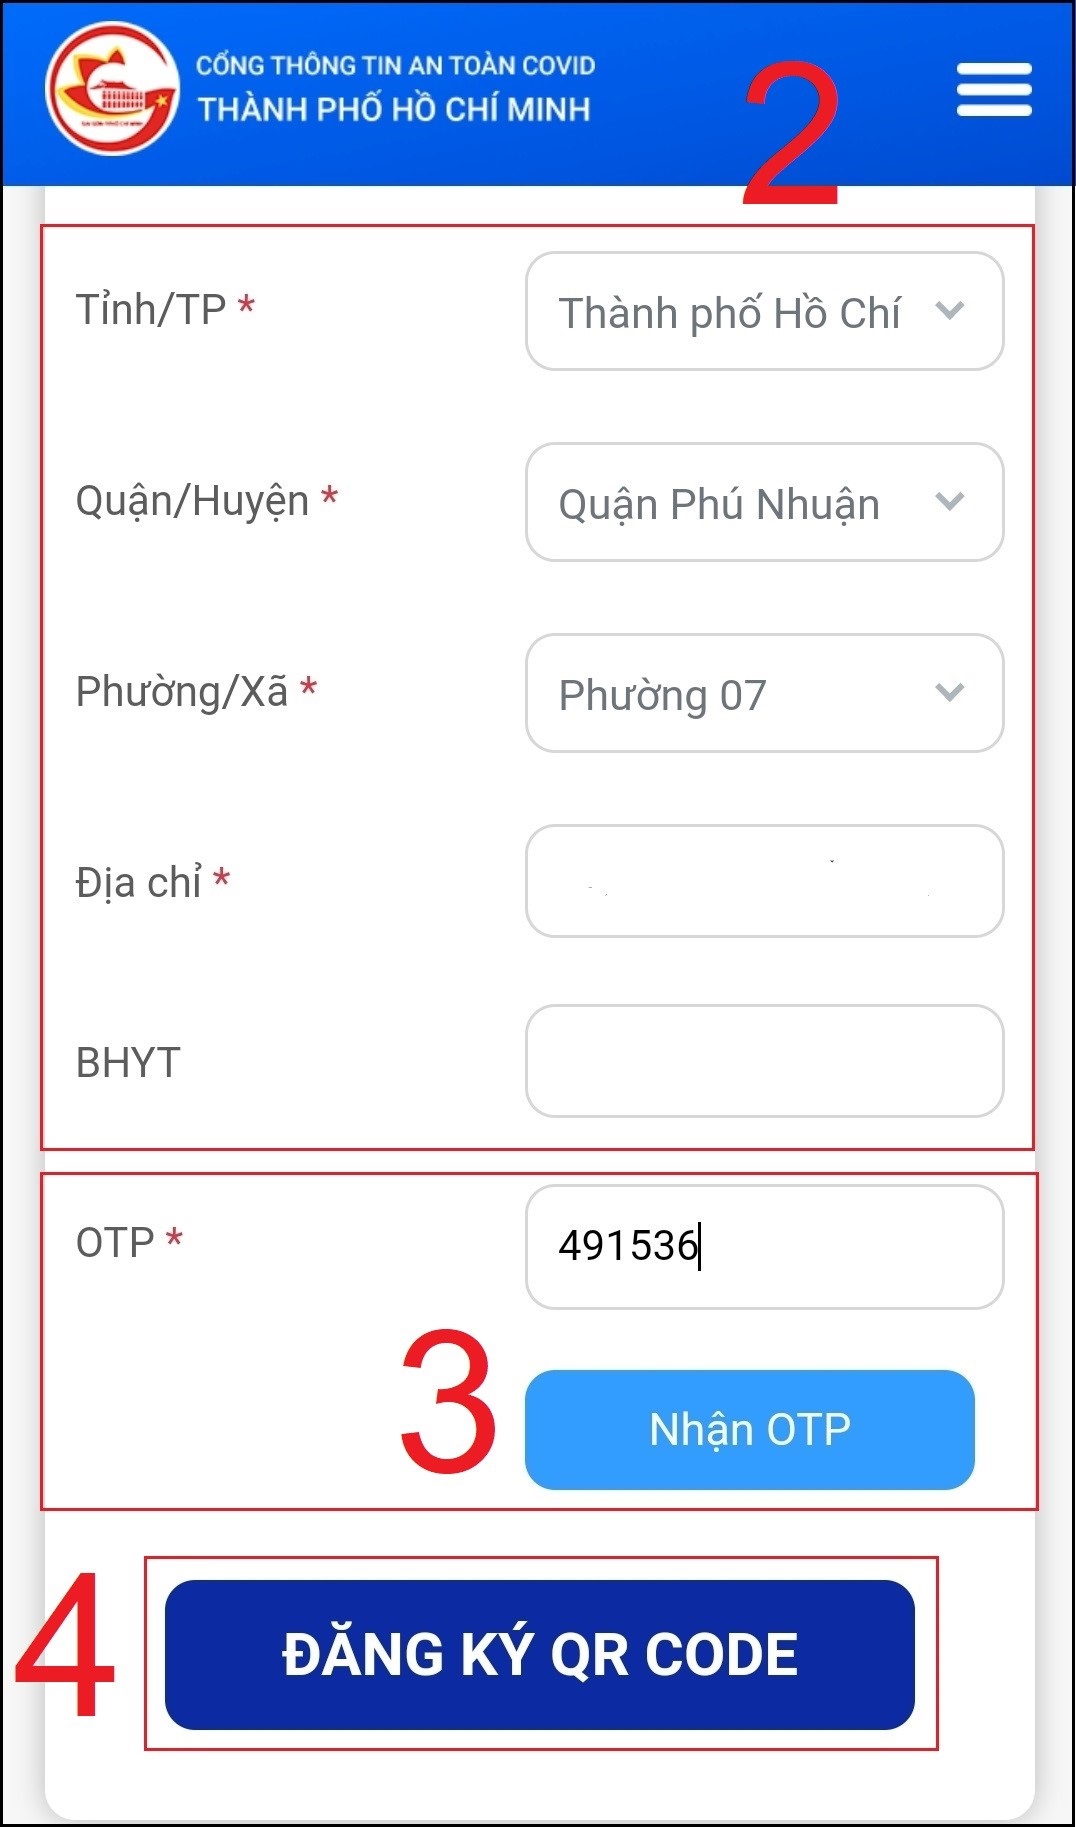 Hãy nhập mã số vào ô OTP, rồi chọn mục Đăng ký QR Code.